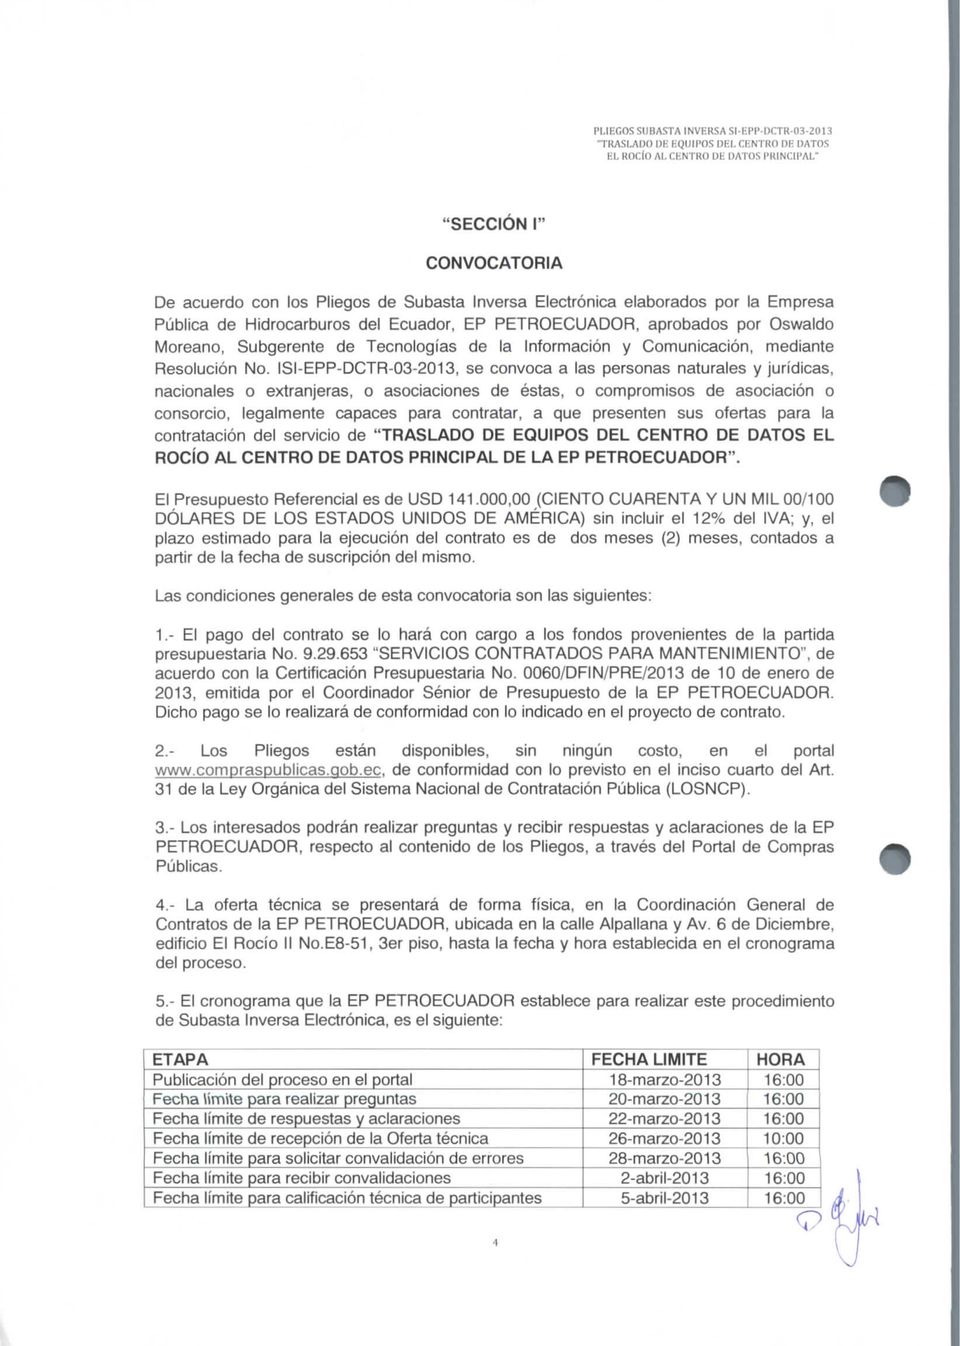 Ecuador, EP PETROECUADOR, aprobados por Oswaldo Moreano, Subgerente de Tecnologías de la Información y Comunicación, mediante Resolución No.